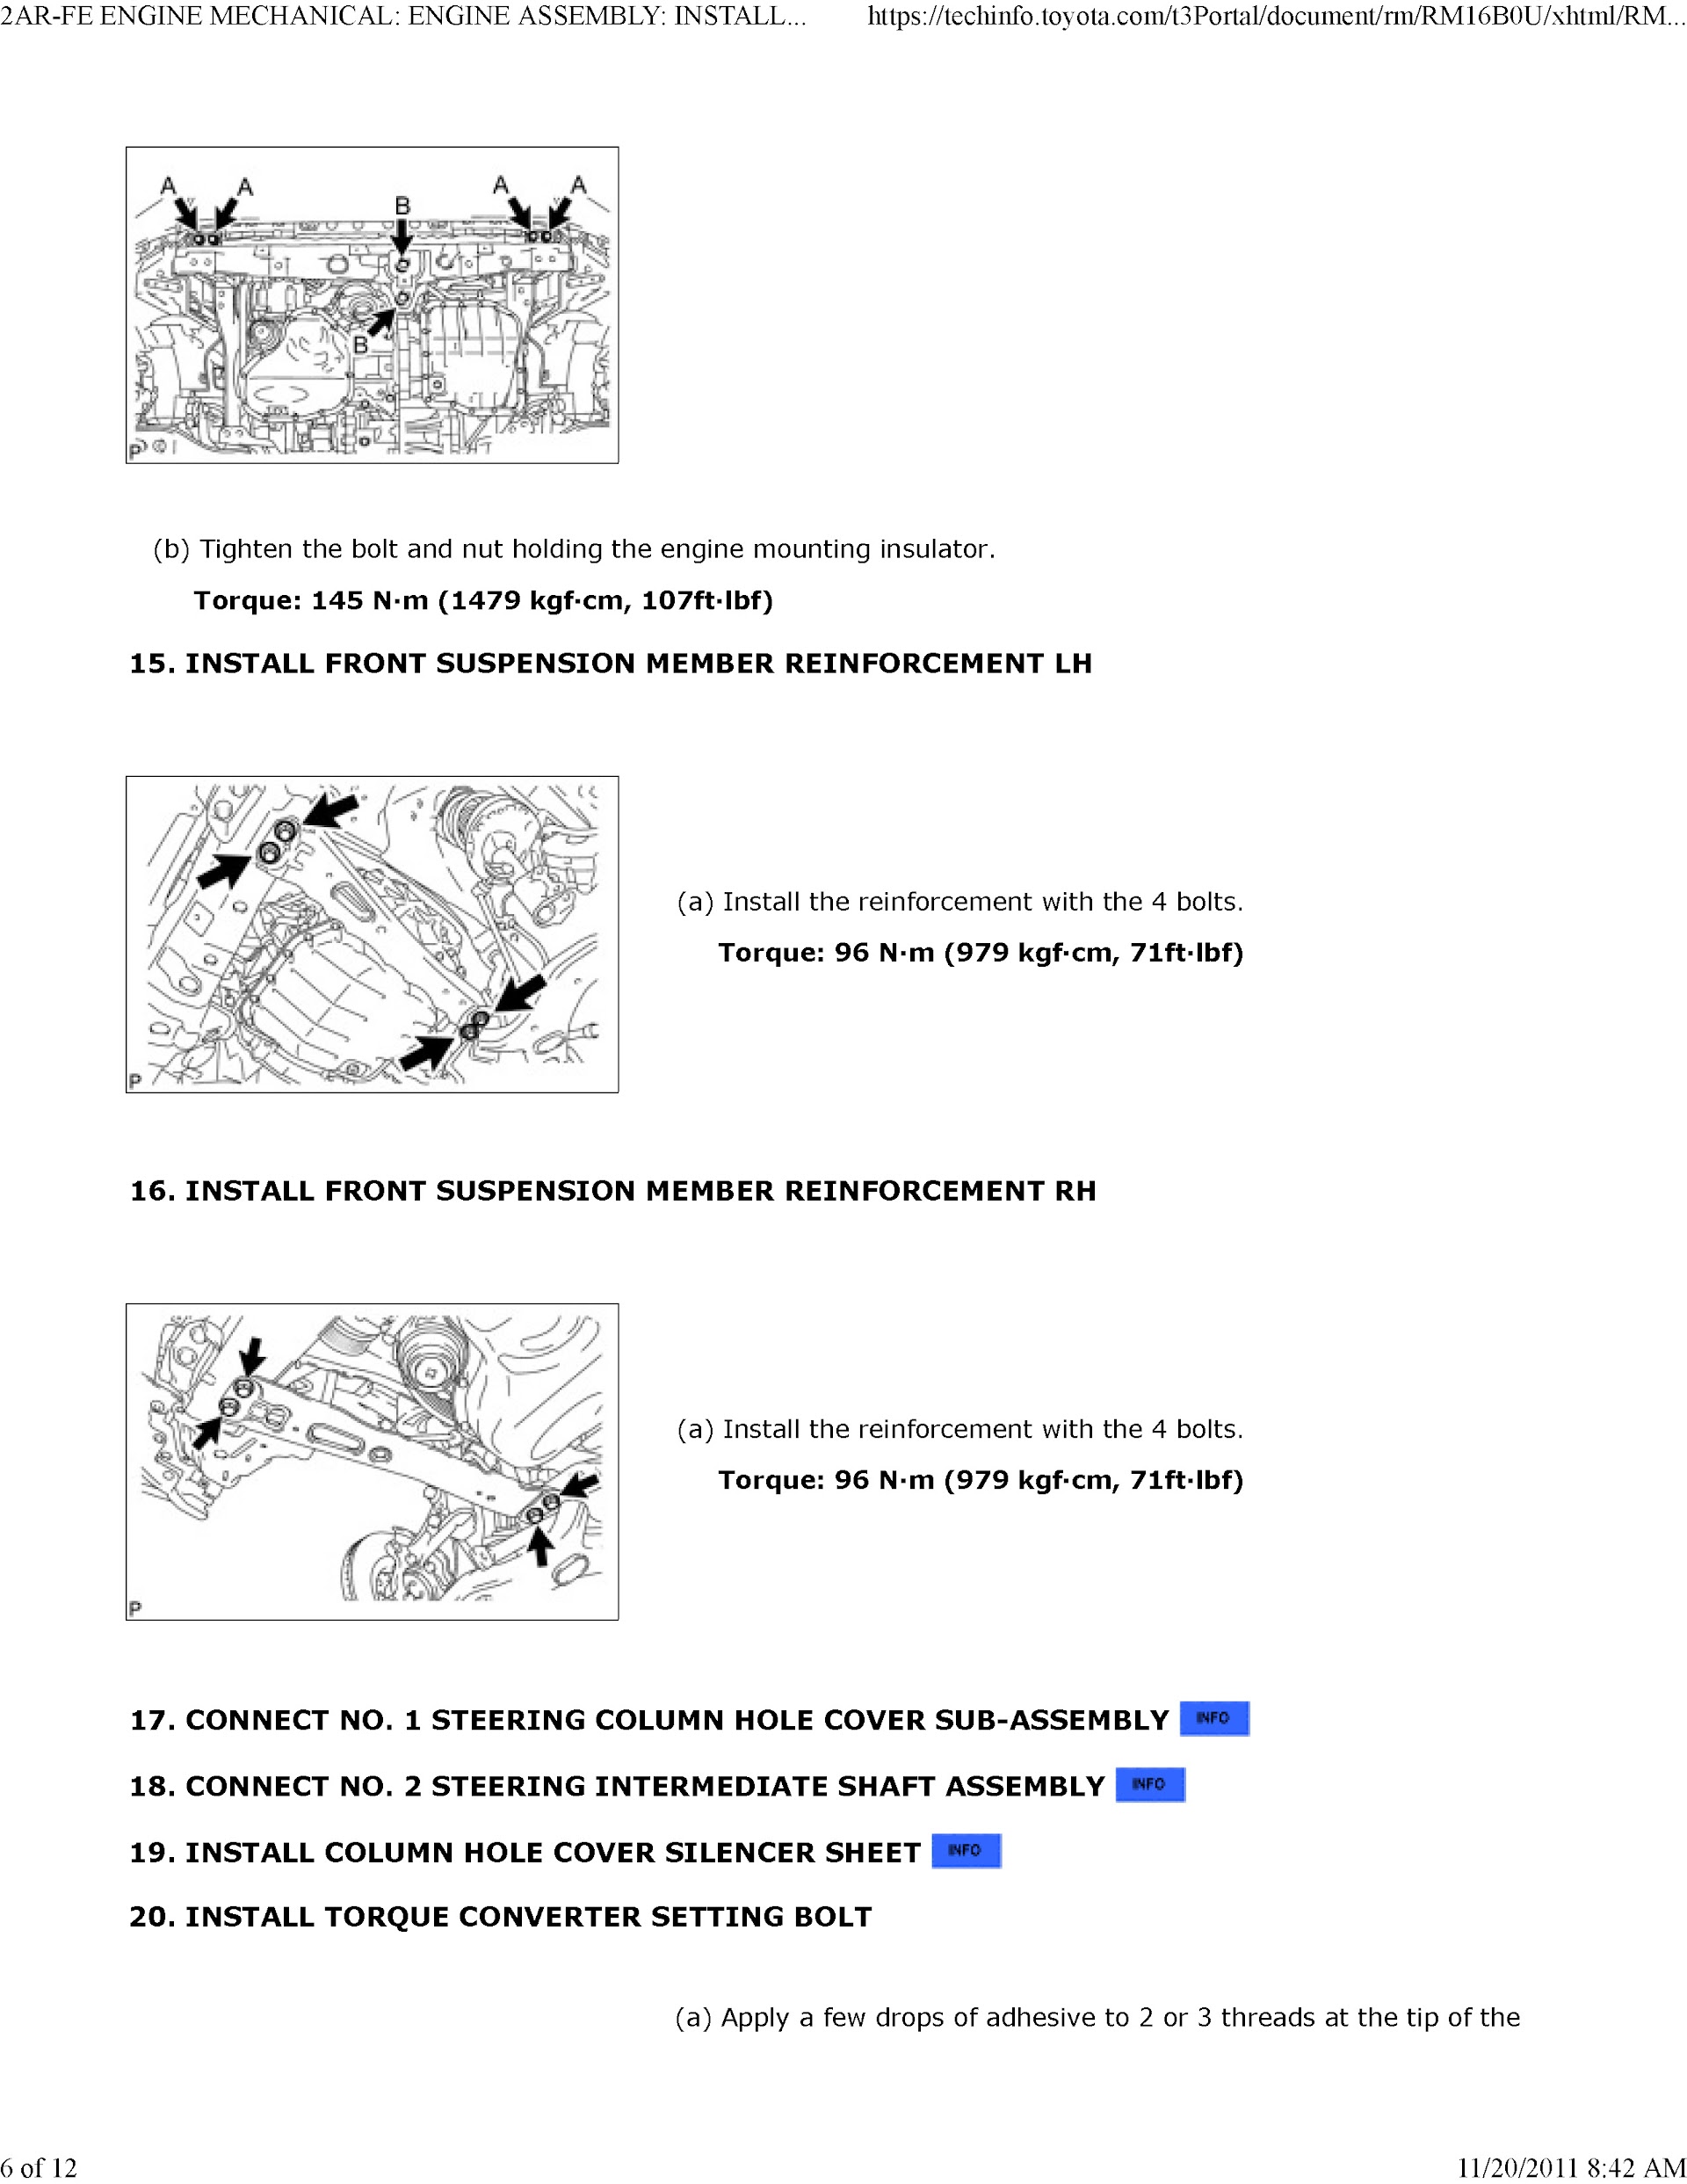 2011-2012 Toyota RAV4 OEM Service Repair Manual